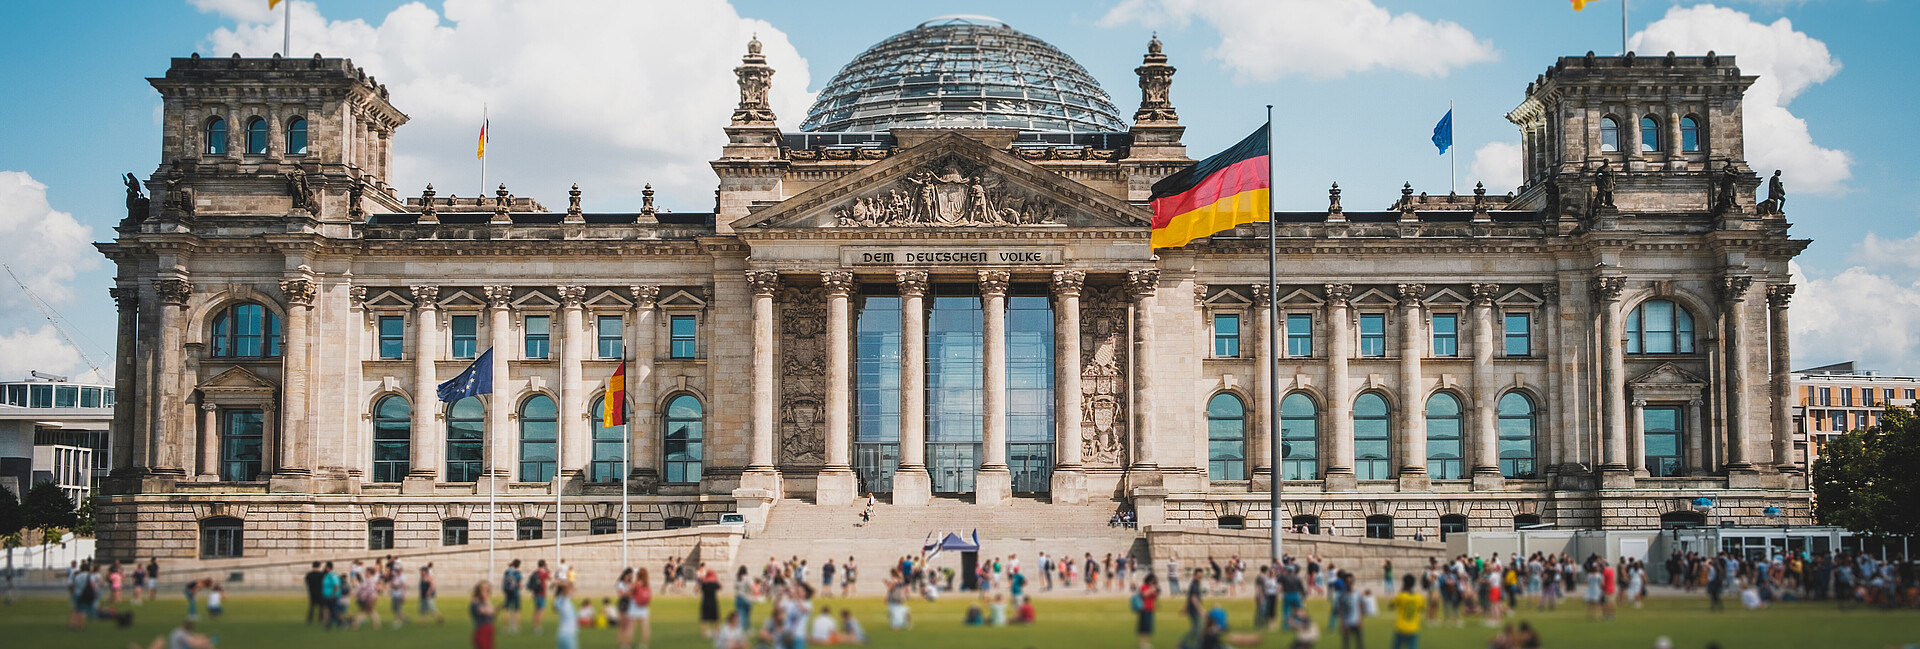 Viele Menschen an einem sonnnigen Tag auf der Wiese vor dem Reichstagsgebäude in Berlin